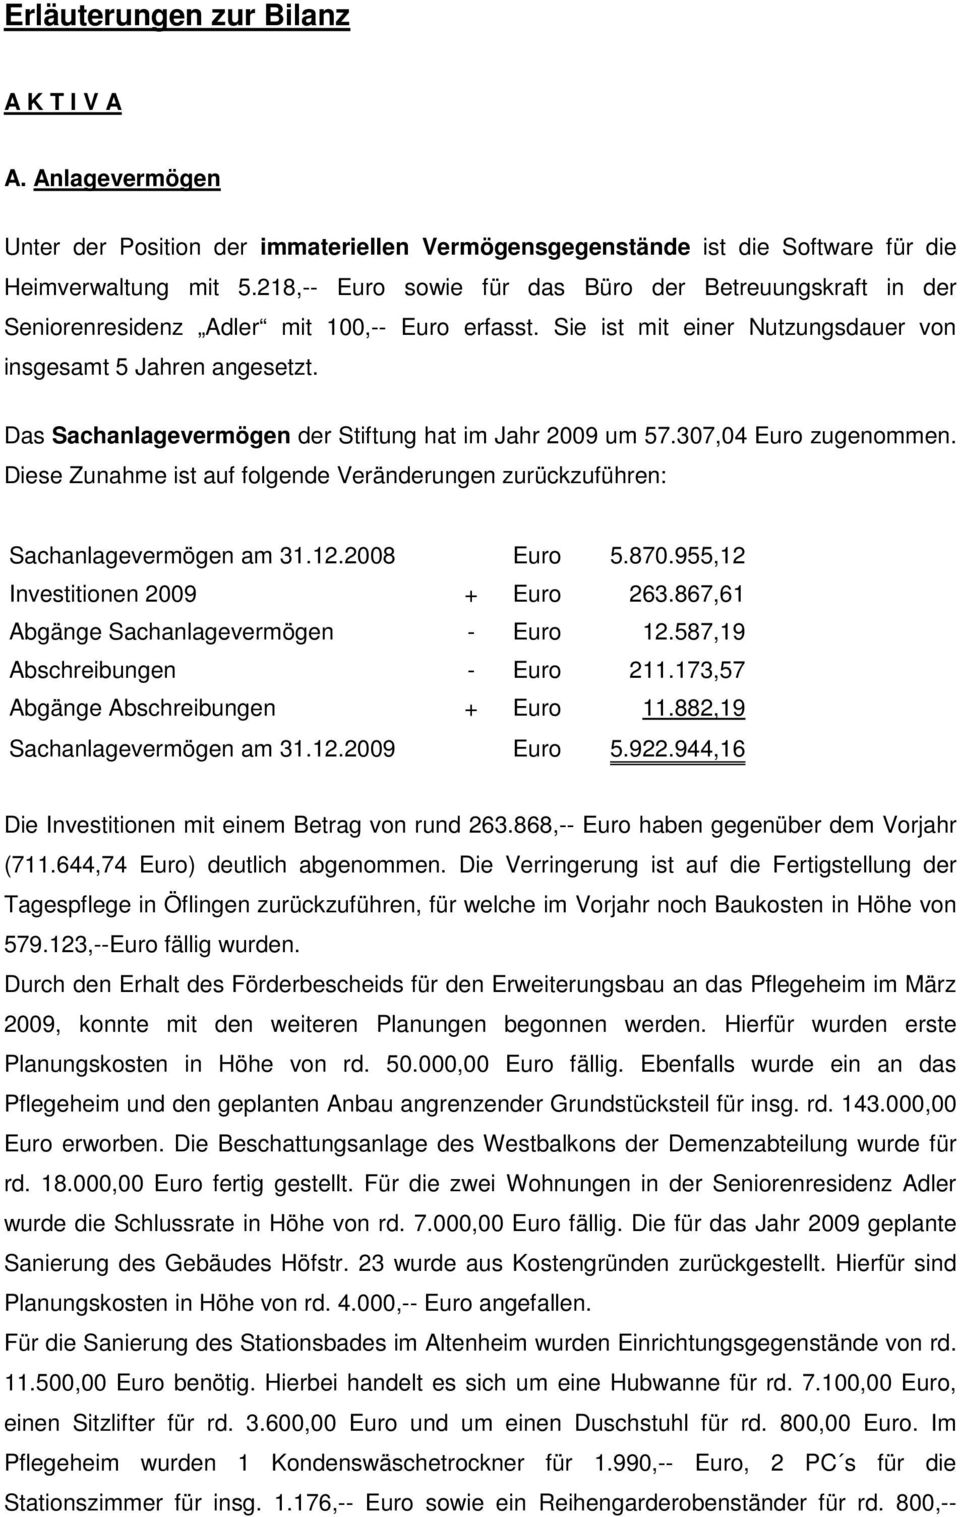 Das Sachanlagevermögen der Stiftung hat im Jahr 2009 um 57.307,04 Euro zugenommen. Diese Zunahme ist auf folgende Veränderungen zurückzuführen: Sachanlagevermögen am 31.12.2008 Euro 5.870.